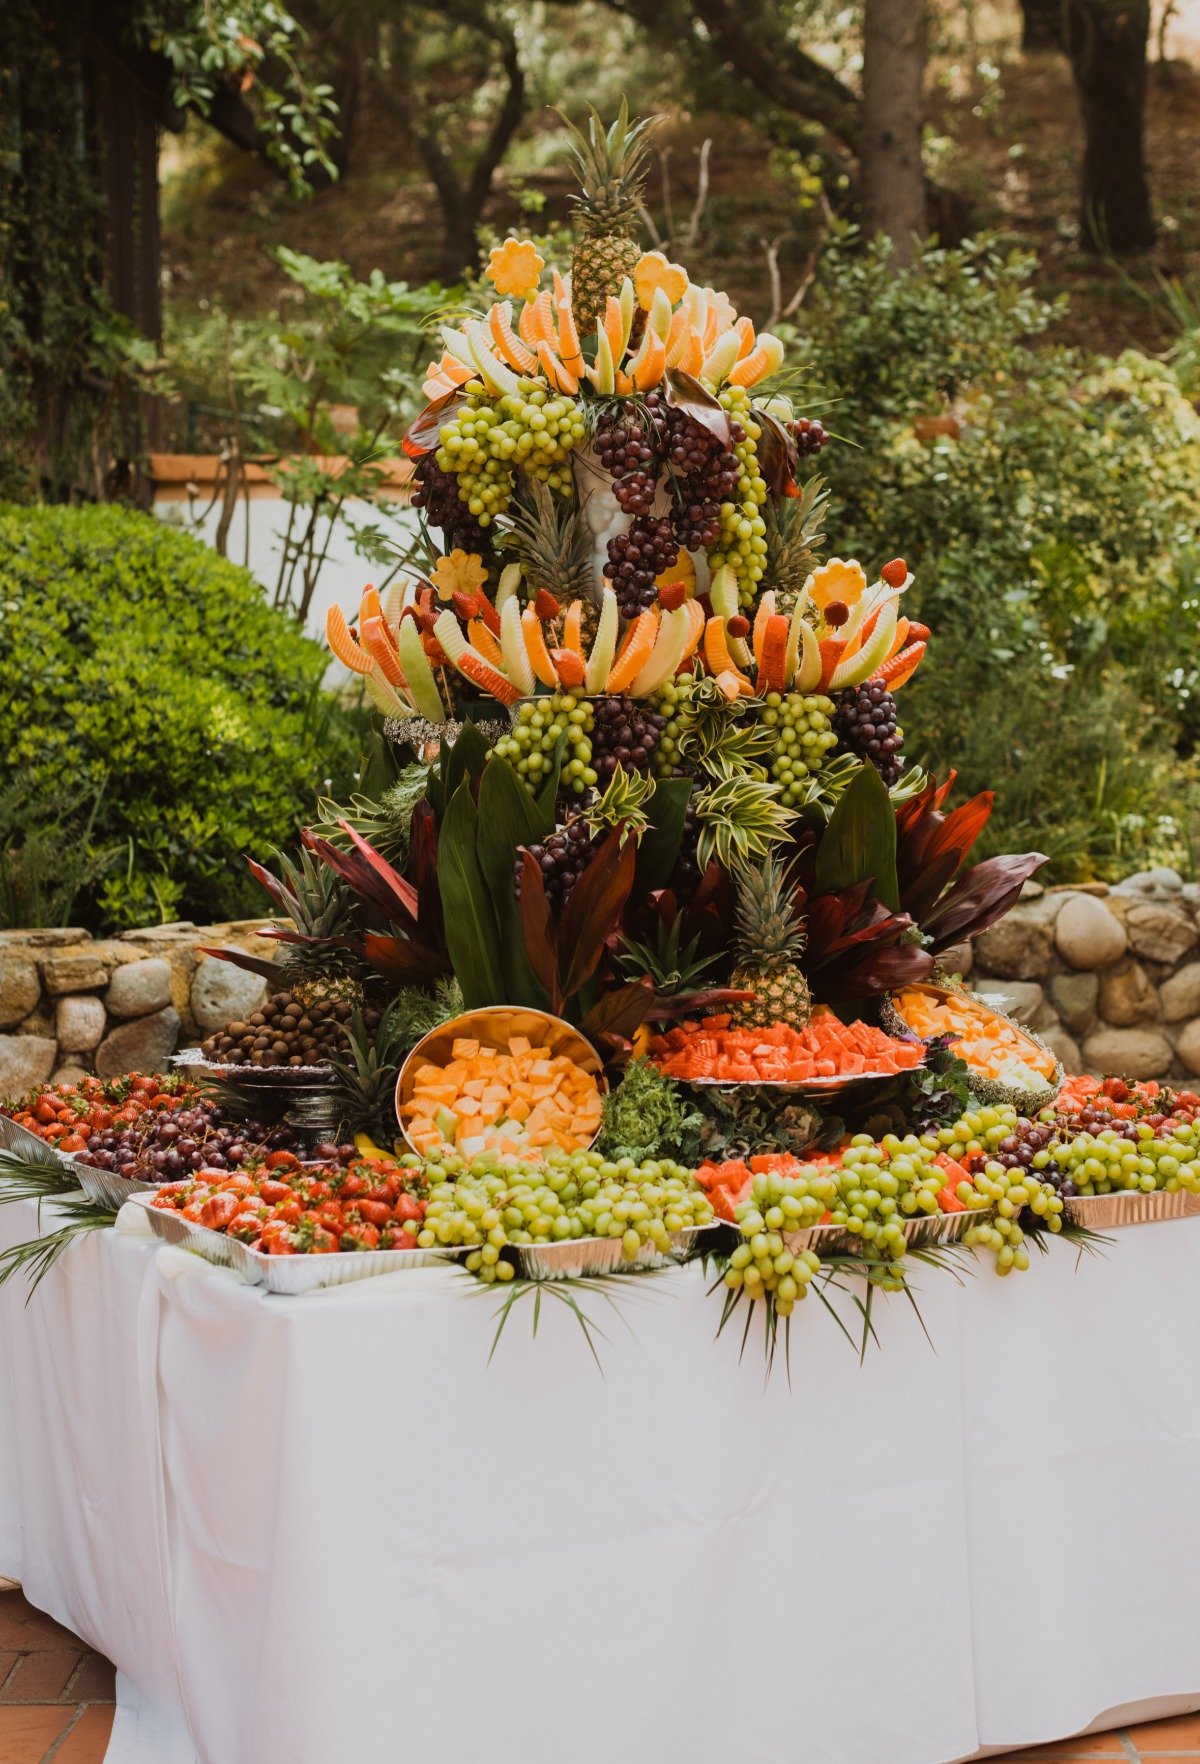 amazing fruit display